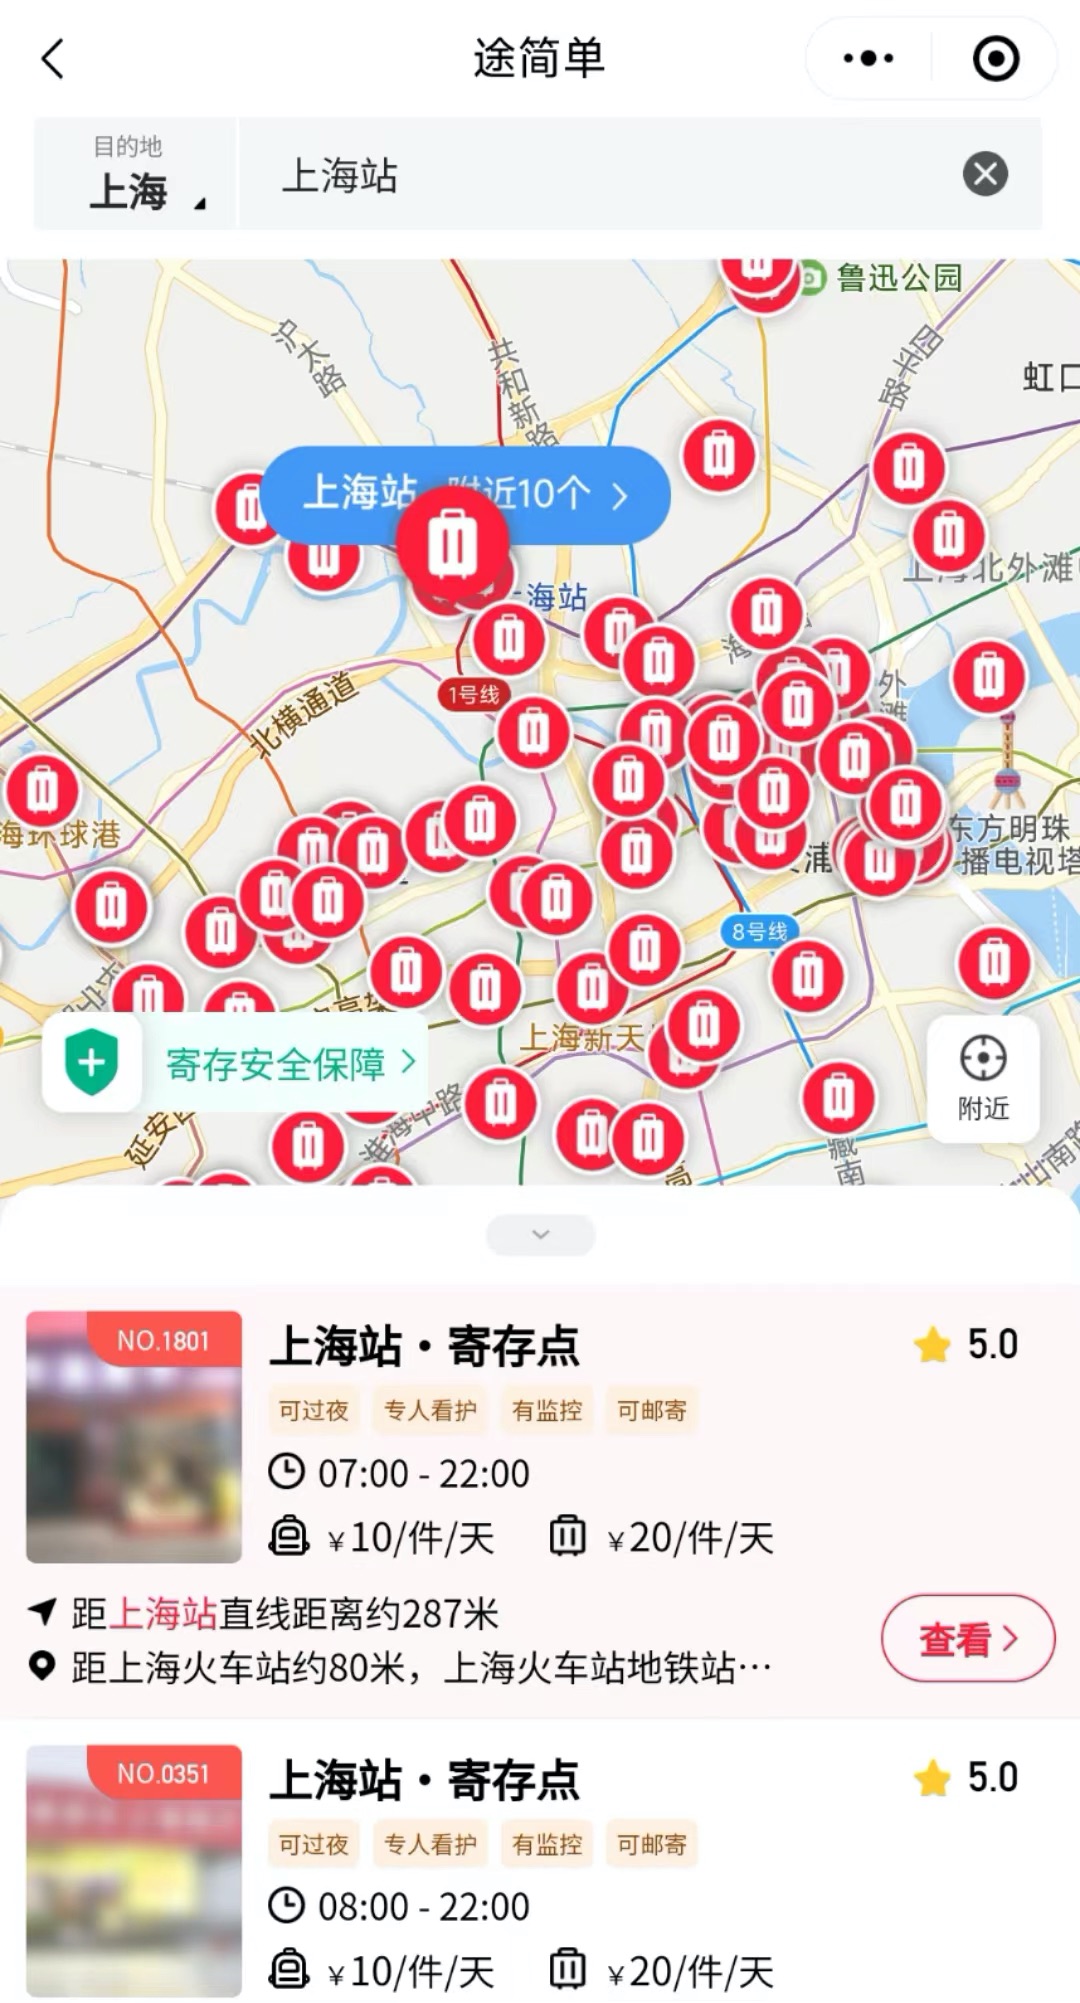 上海旅游丨免费存行李的地方、寄存指南